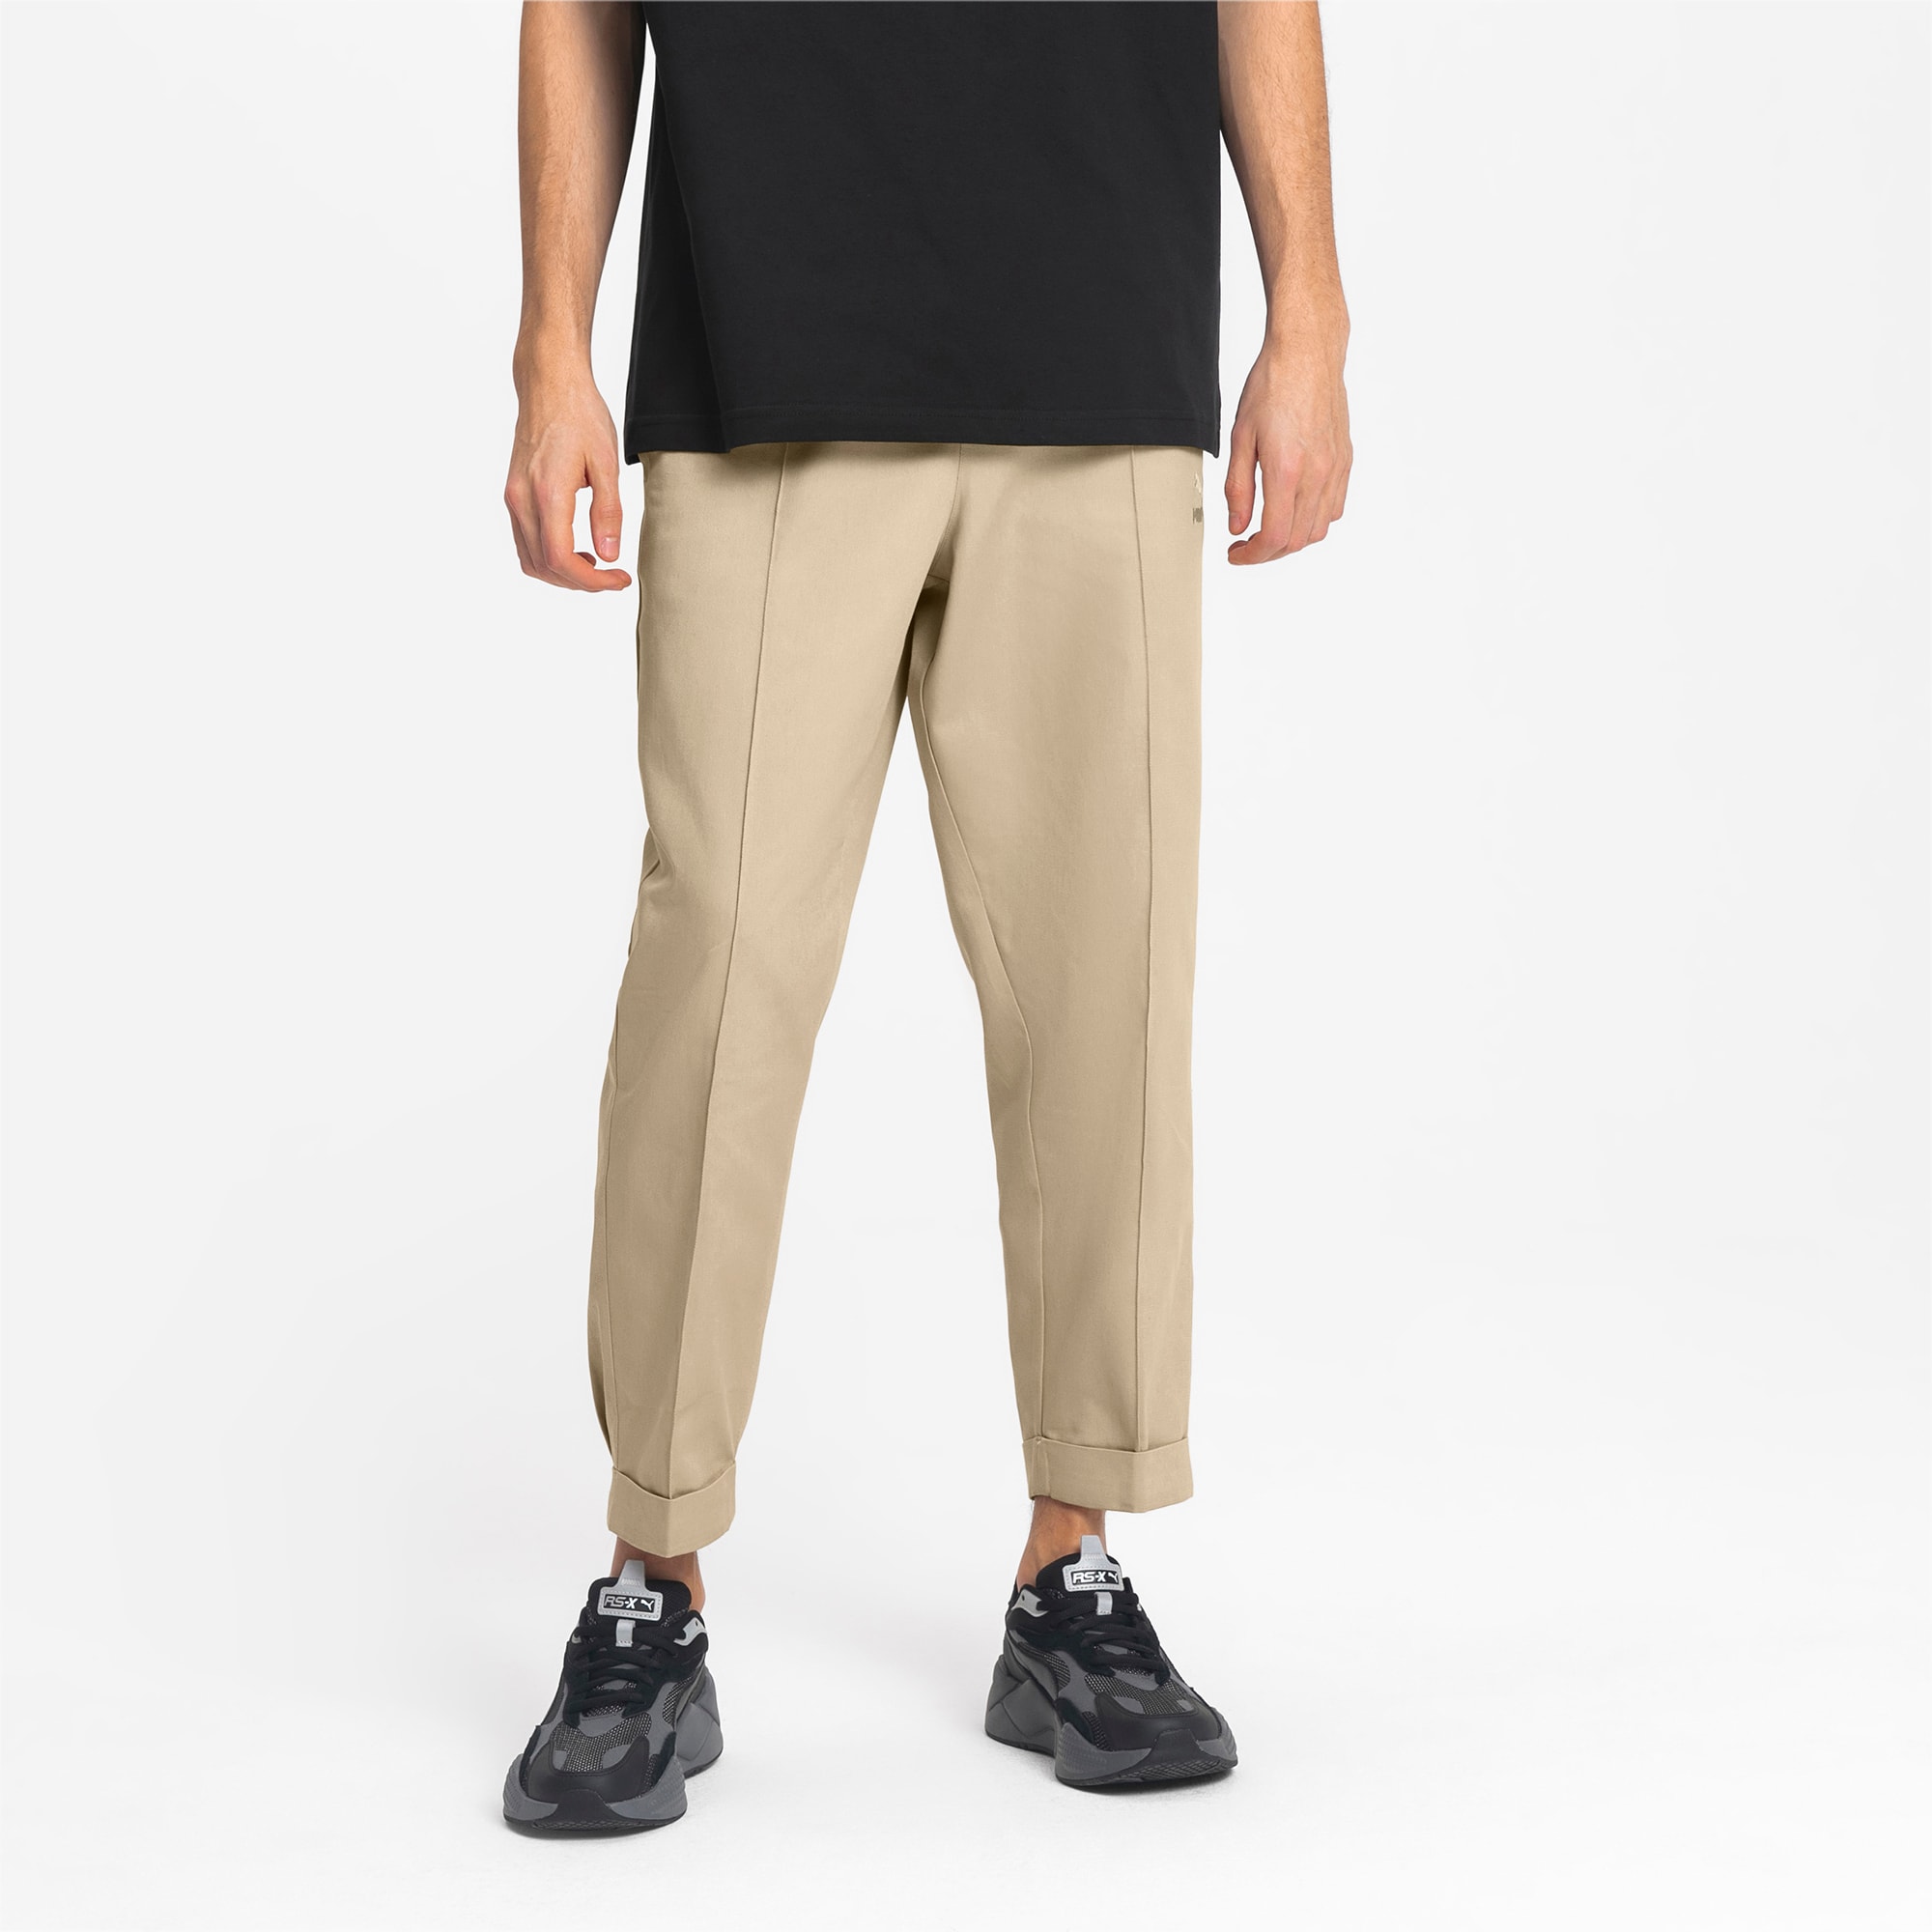 Woven Men's Chino Pants | Pale Khaki 